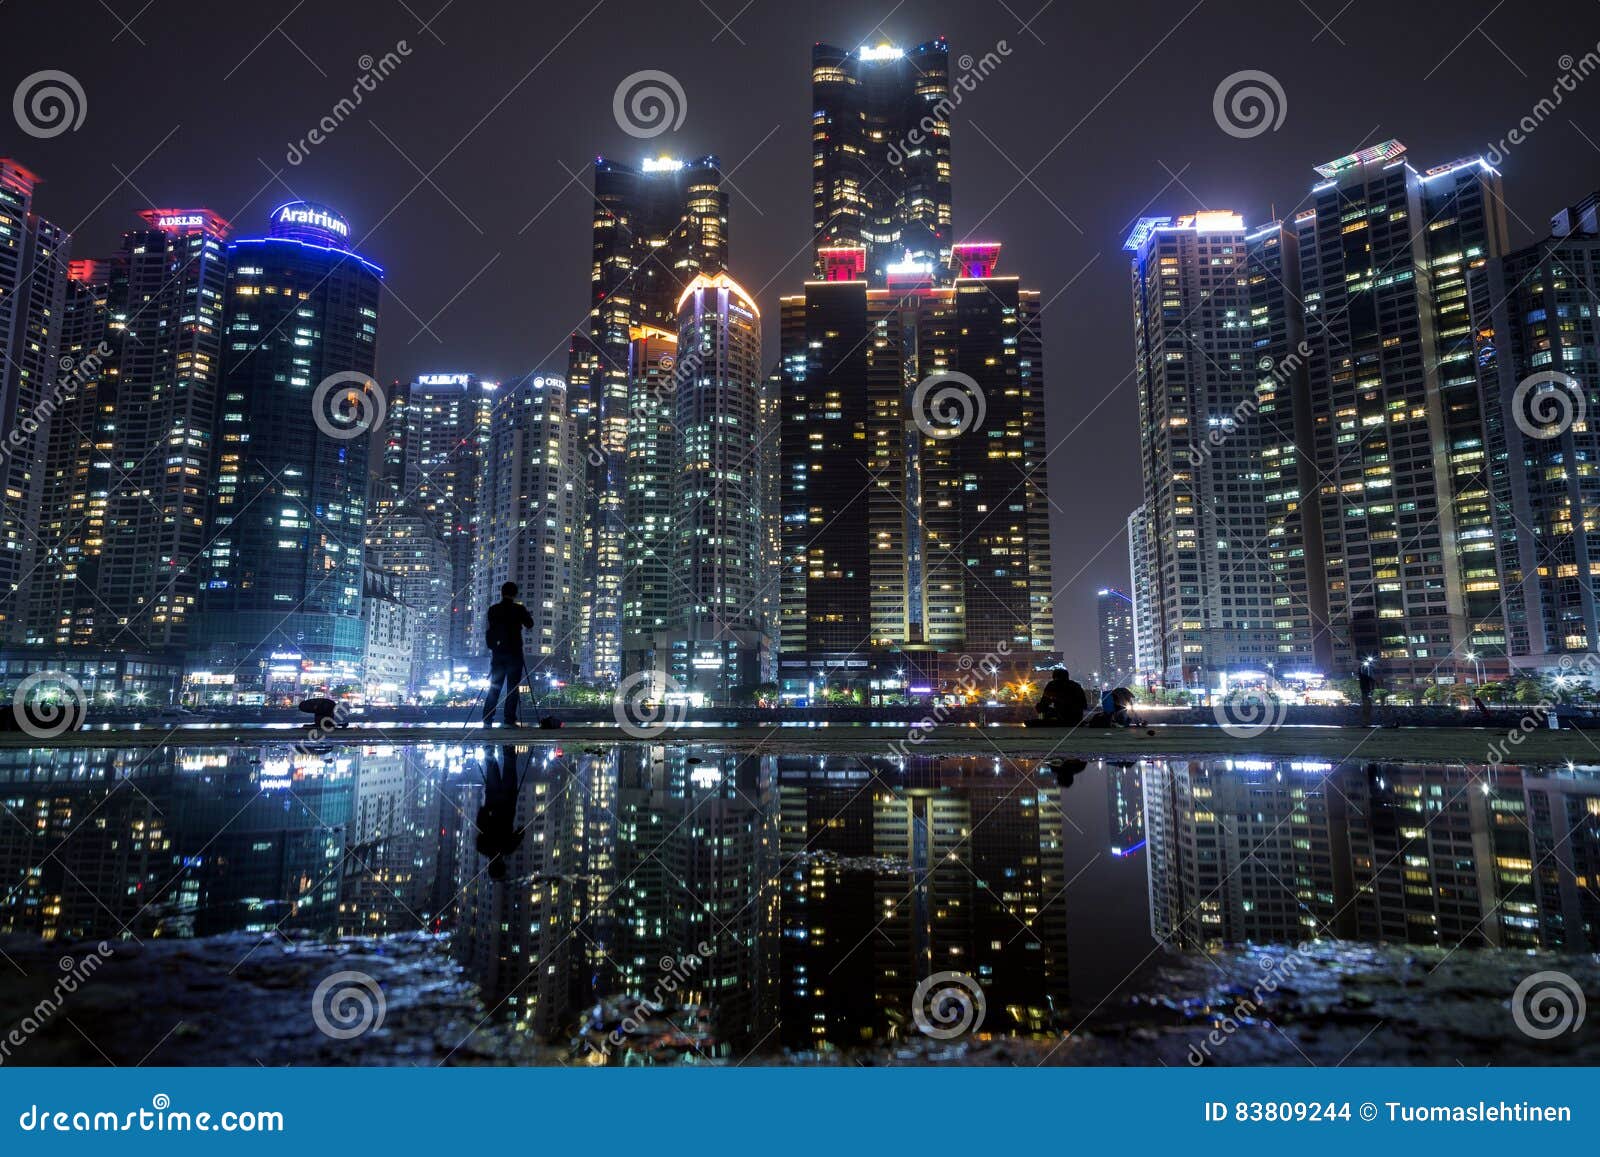 Wolkenkratzer bei Marine City in Busan nachts. Ansicht von Wolkenkratzern am Marine City-Wohngebiet in Haeundae-Bezirk und an ihrer Reflexion in einer Pfütze in Busan, Südkorea, nachts